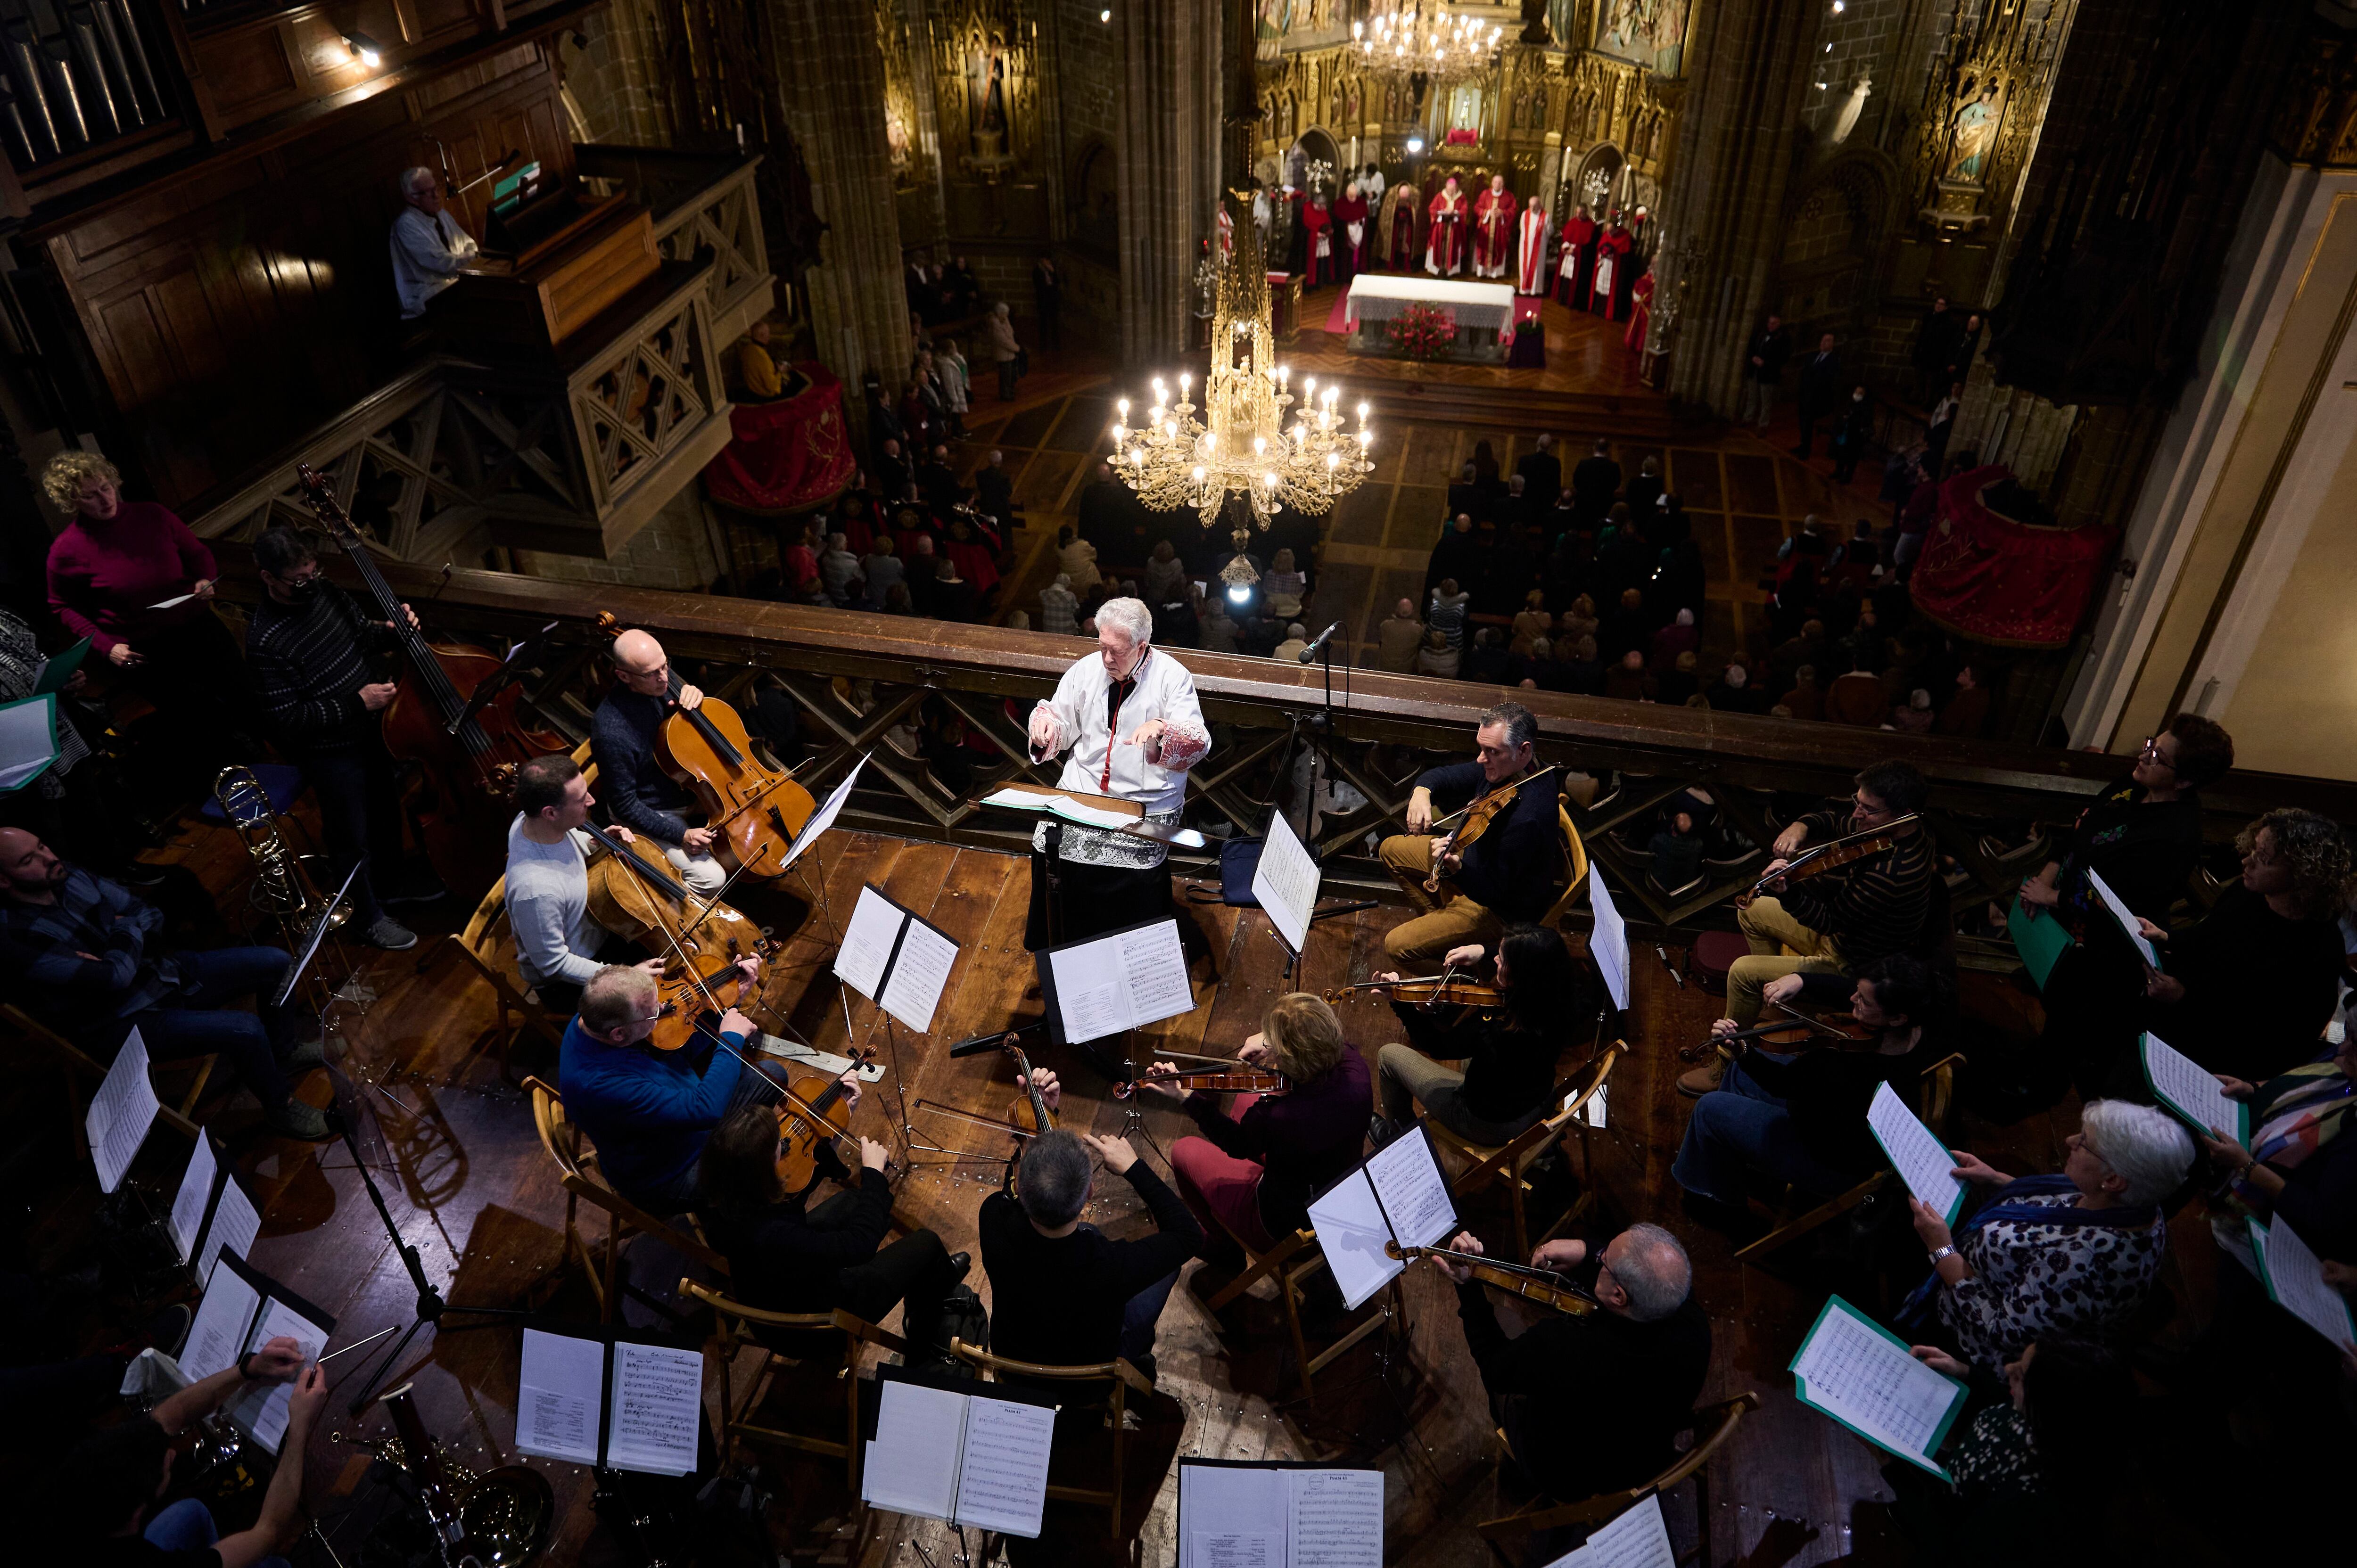 Momento del concierto en la catedral de Pamplona del pasado 29 de noviembre con Sagaseta al frente.